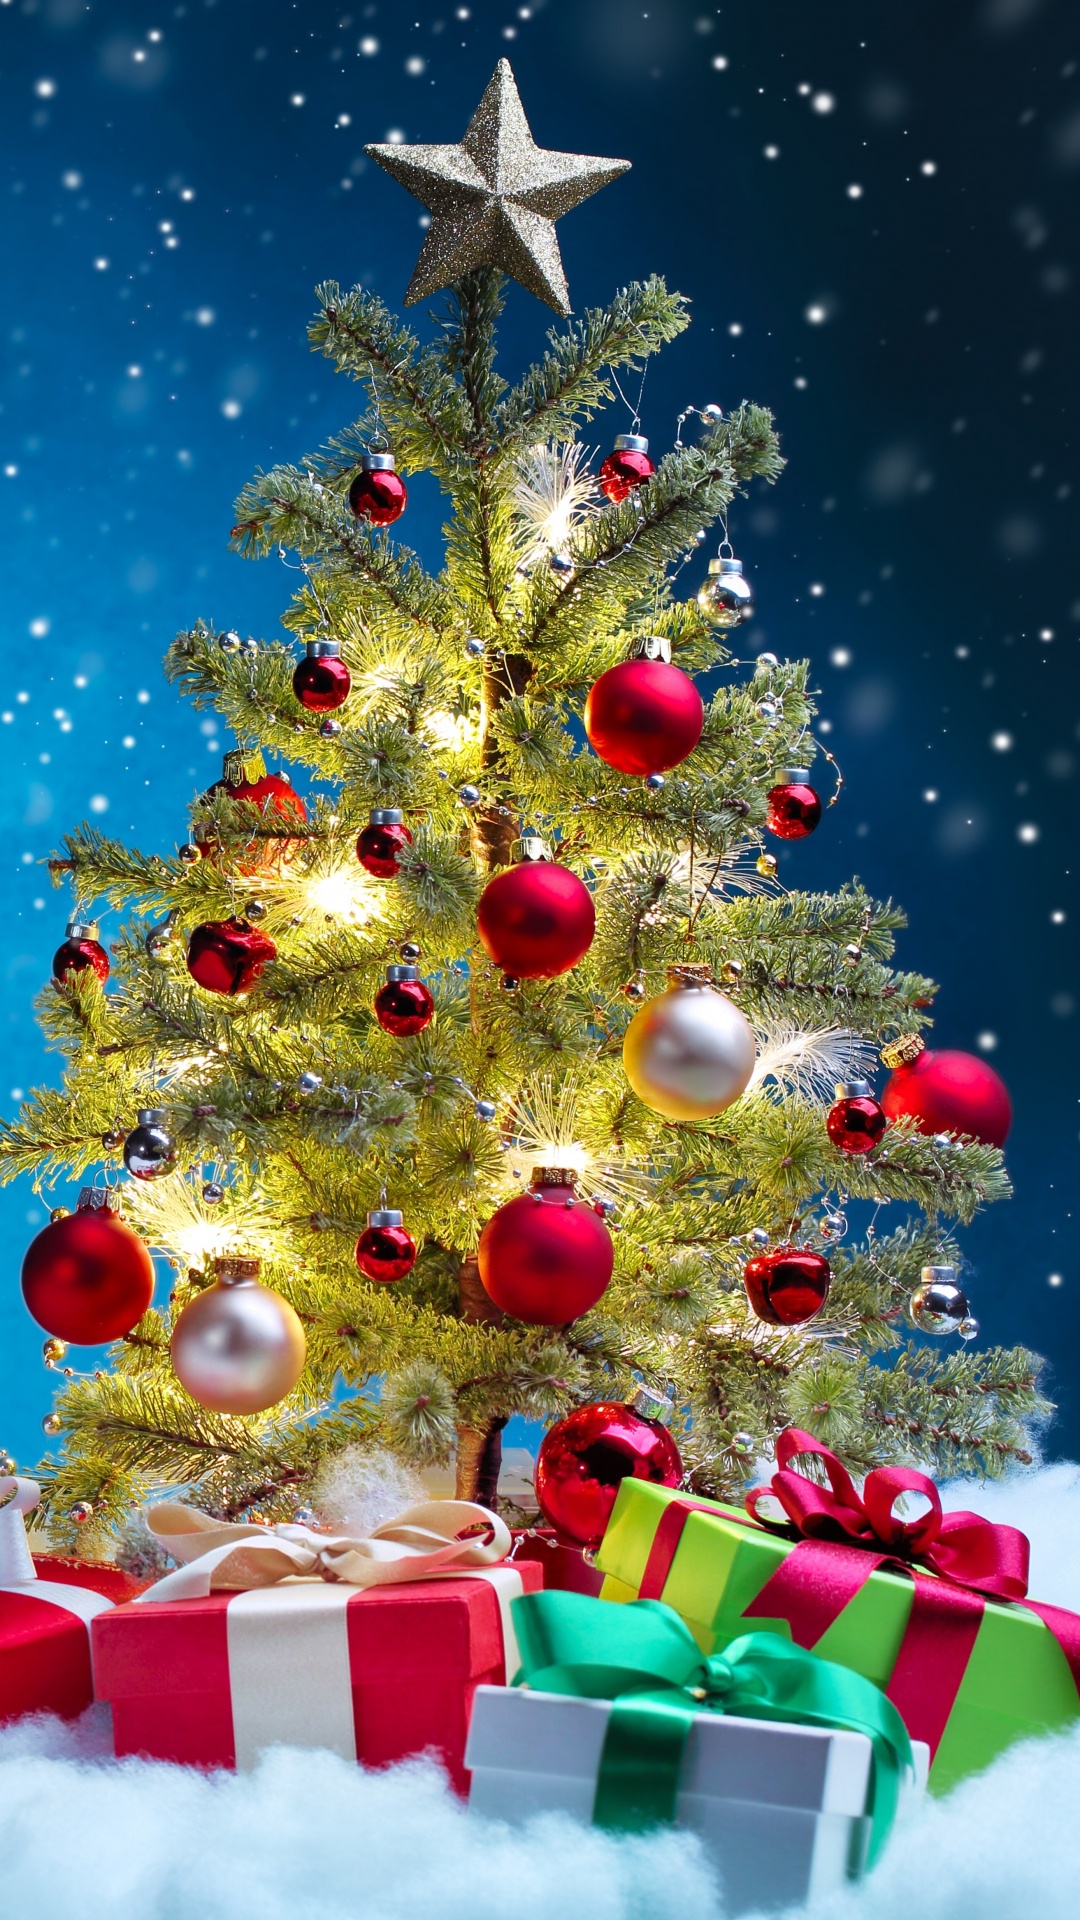 圣诞树, 圣诞节, 圣诞装饰, 圣诞前夕, 圣诞节的装饰品 壁纸 1080x1920 允许